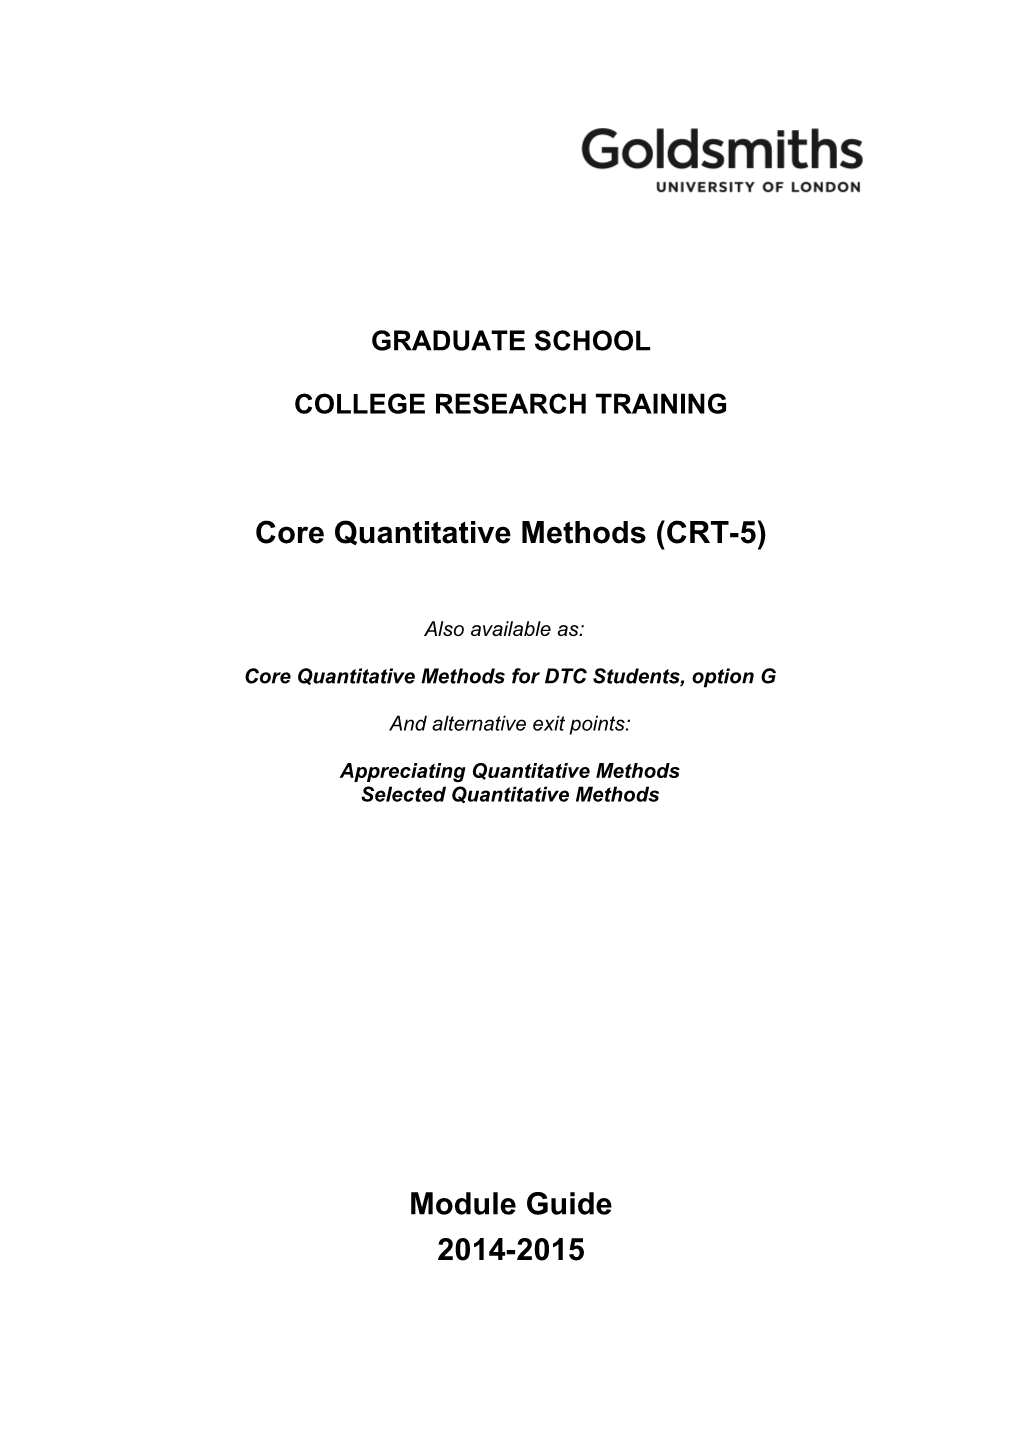 Core Quantitative Methods (CRT-5)